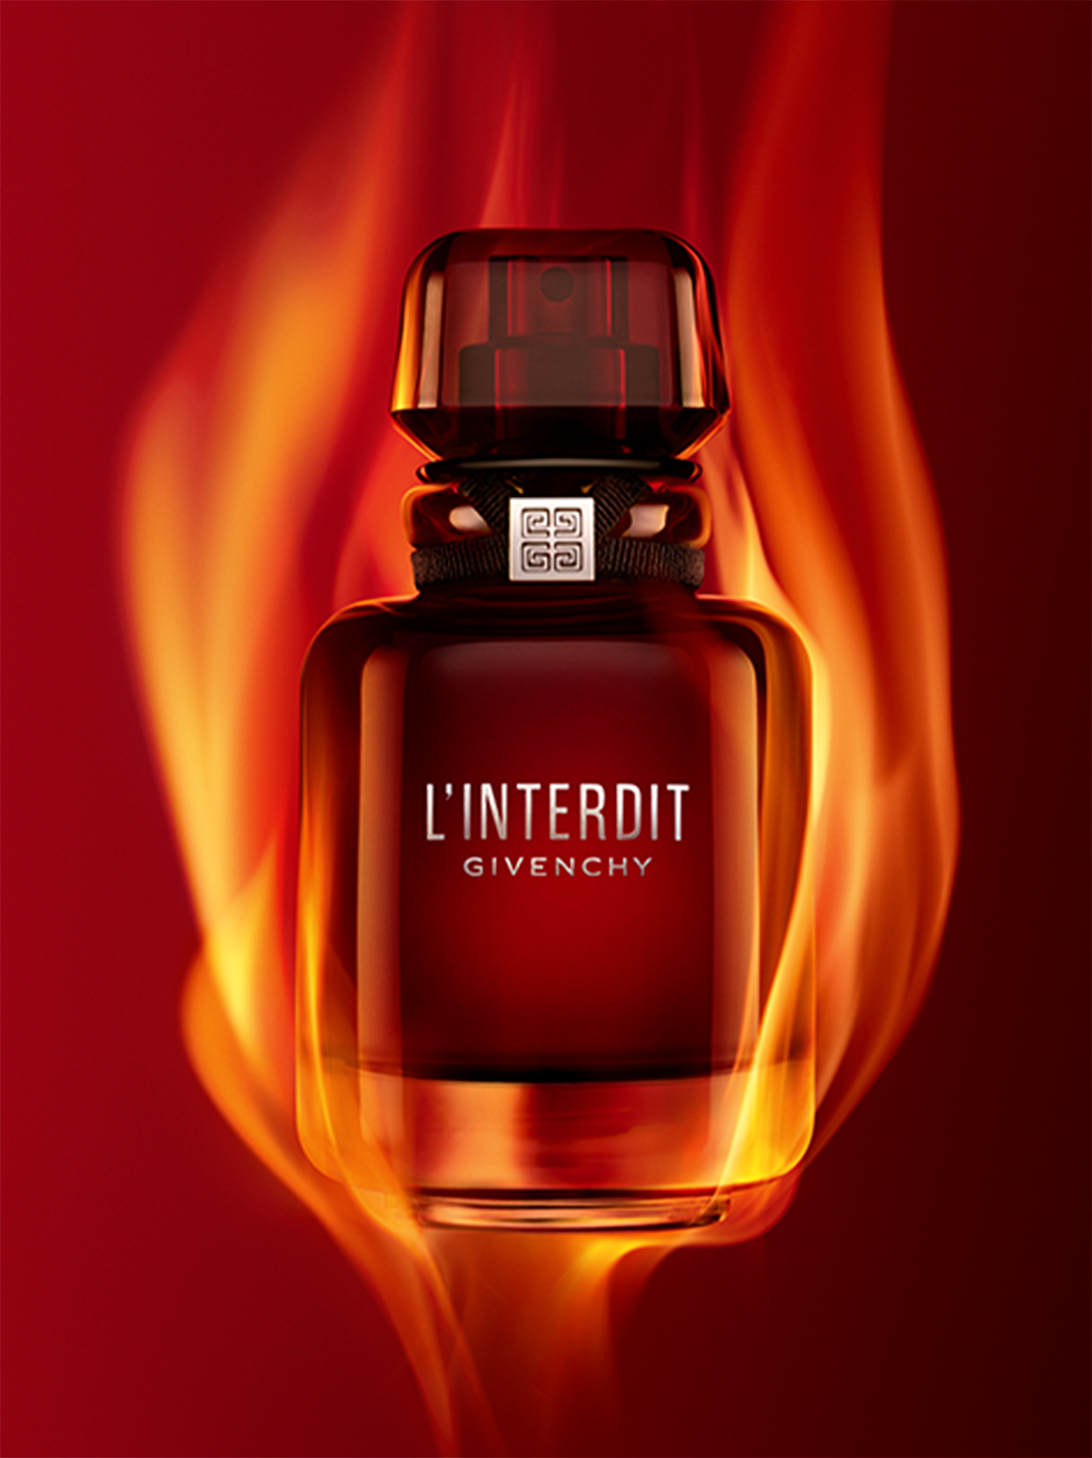 L'Interdit Eau de Parfum Rouge by Givenchy for women - Perfume Planet 